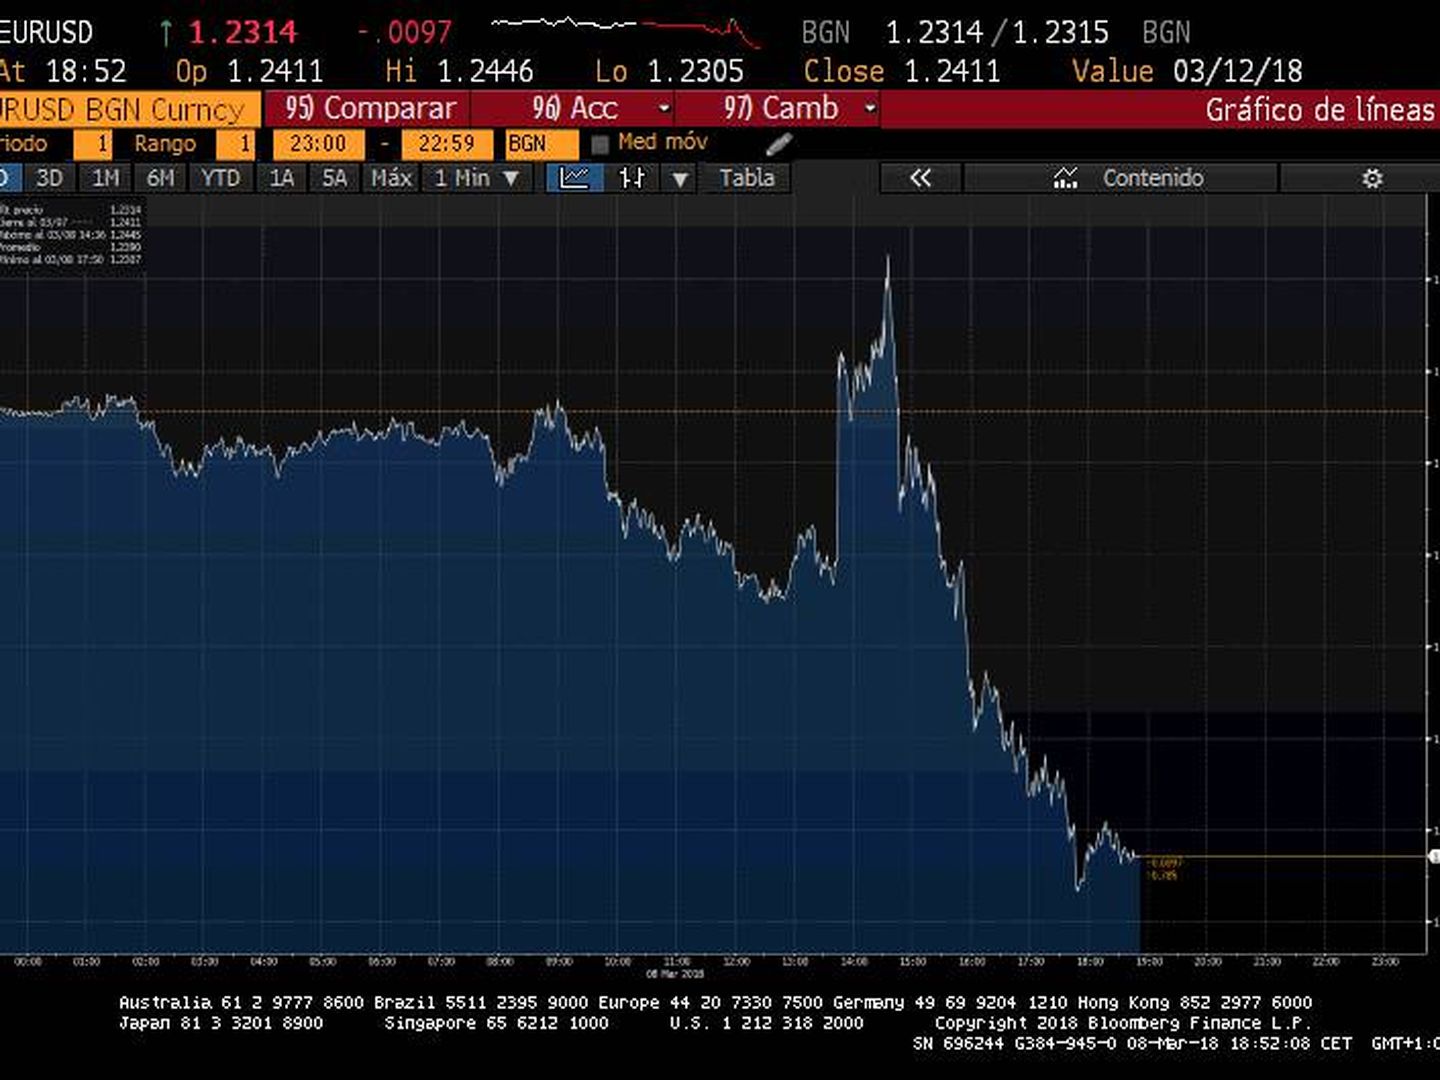 Comportamiento del euro/dólar en la sesión de este jueves. (Bloomberg)